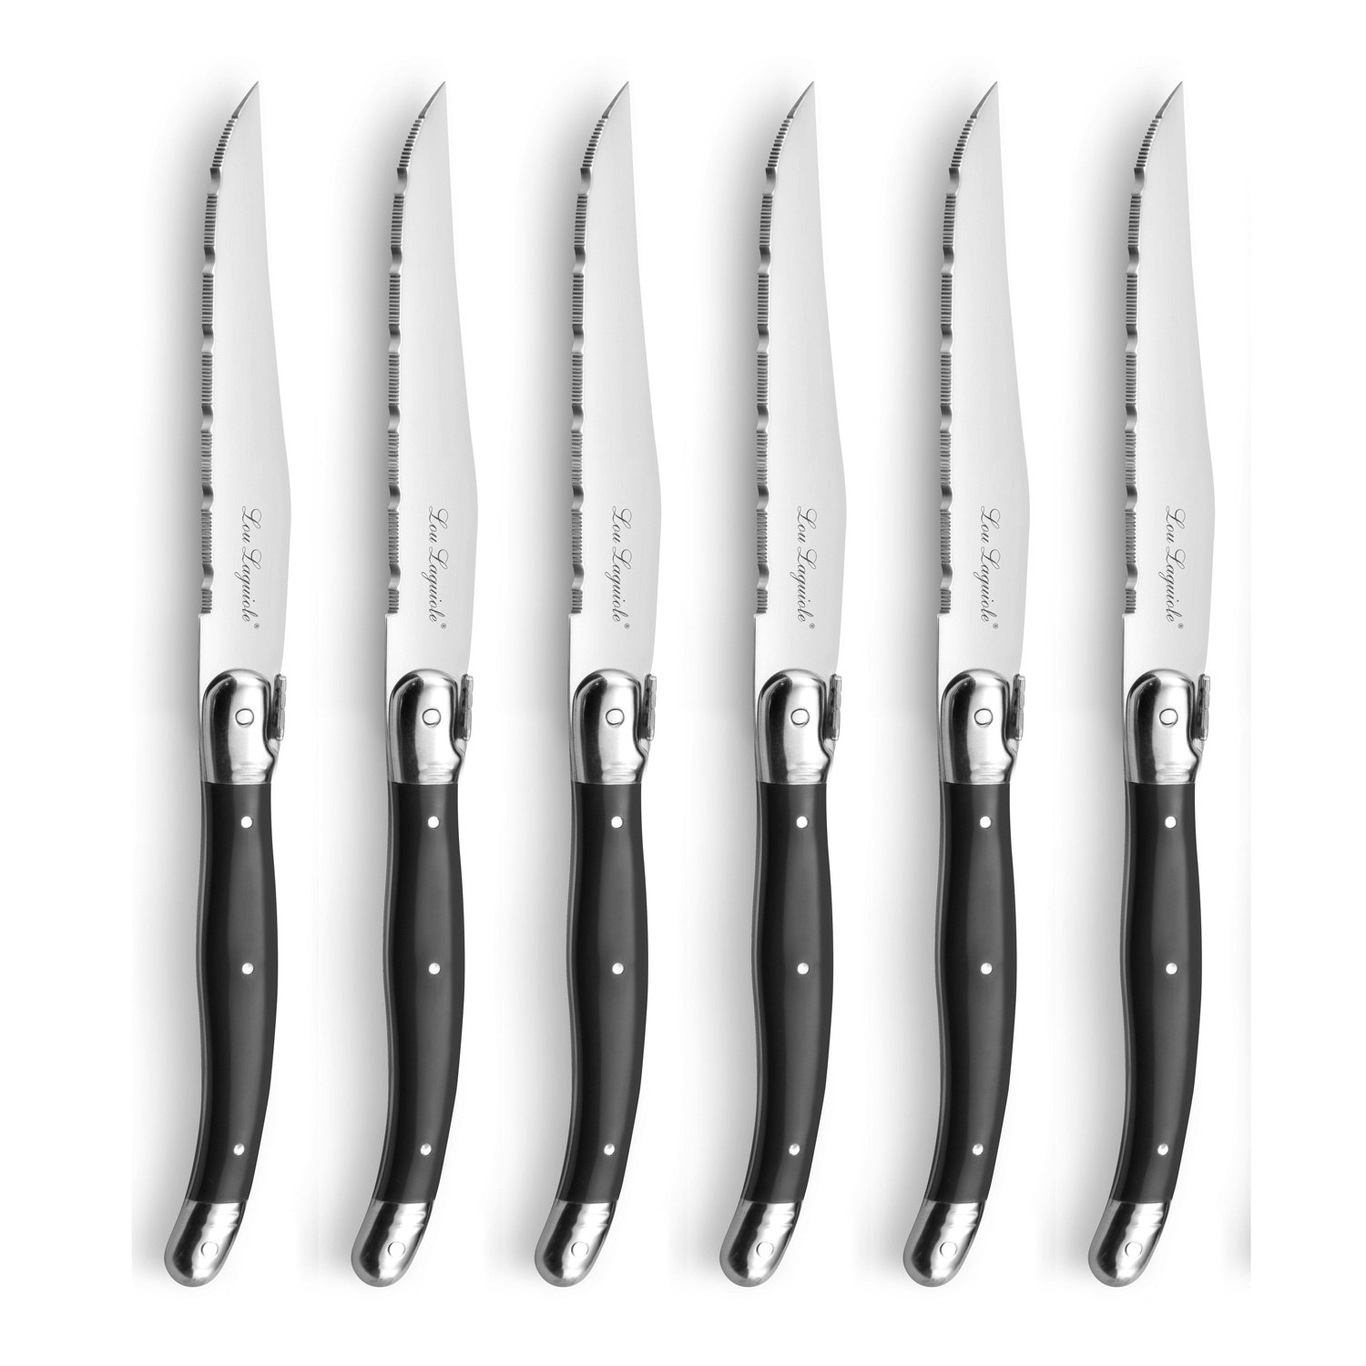 Tradition Grillknive med Knivblok 6-pak, Antracitgrå